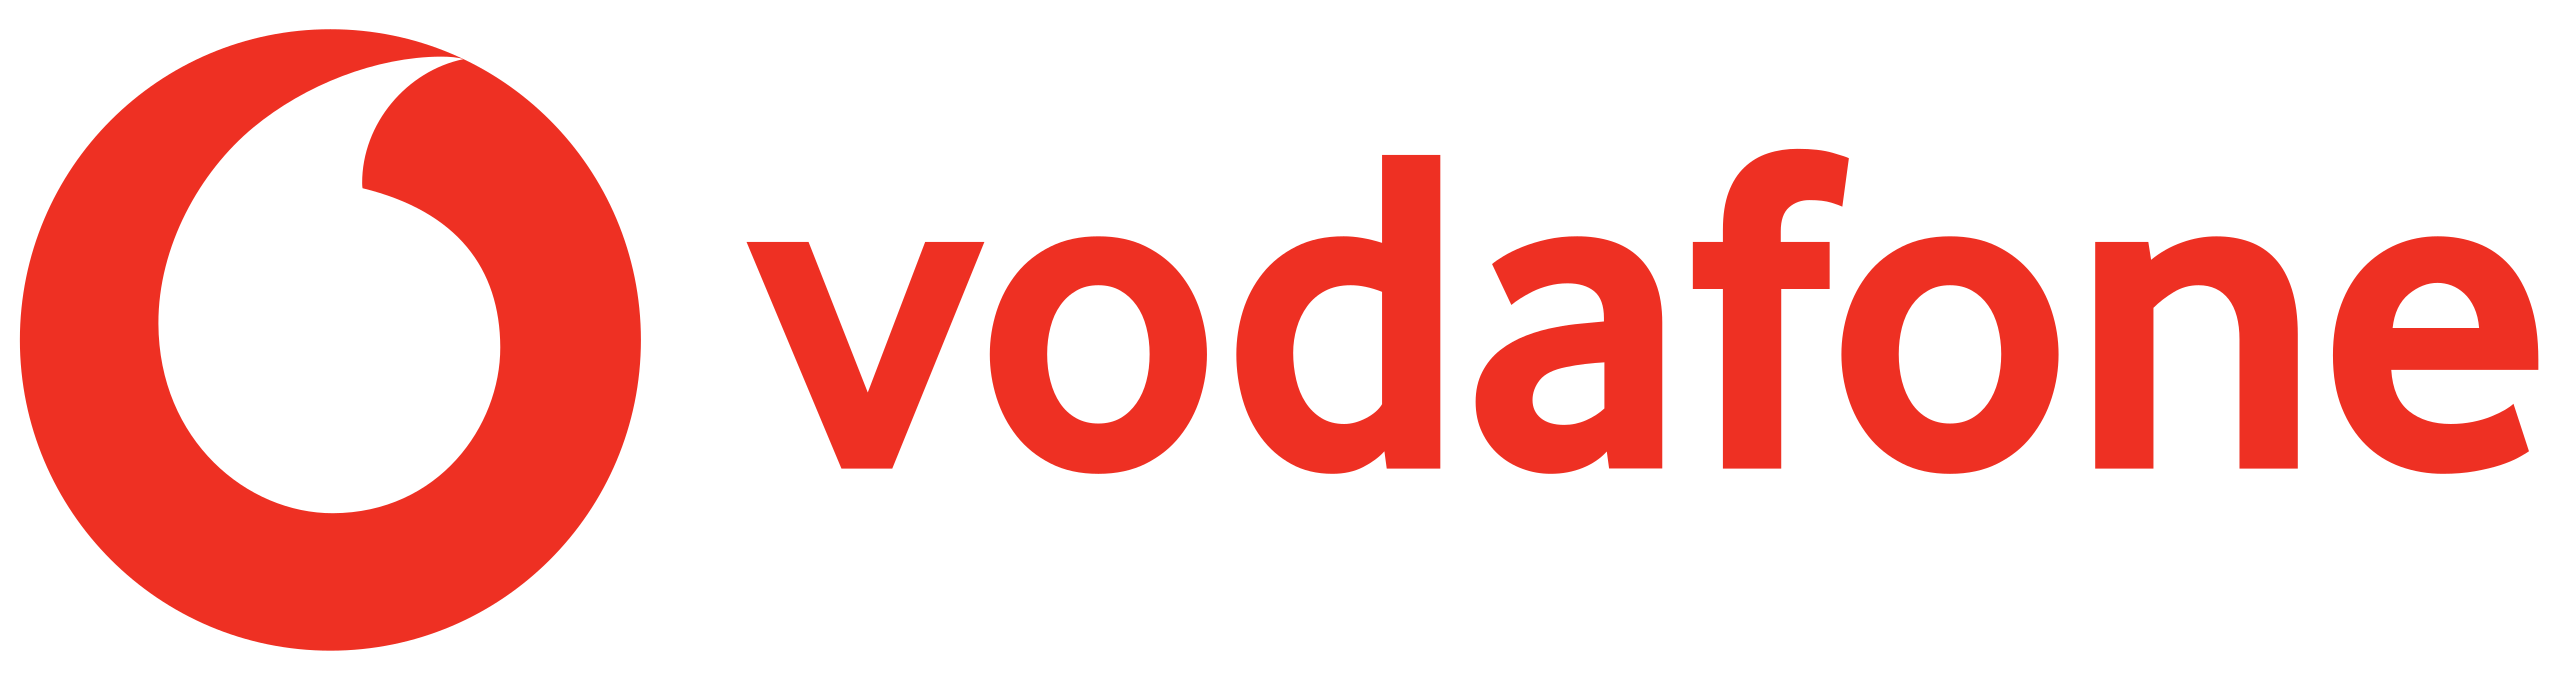 Vodafone - Fifteen Group